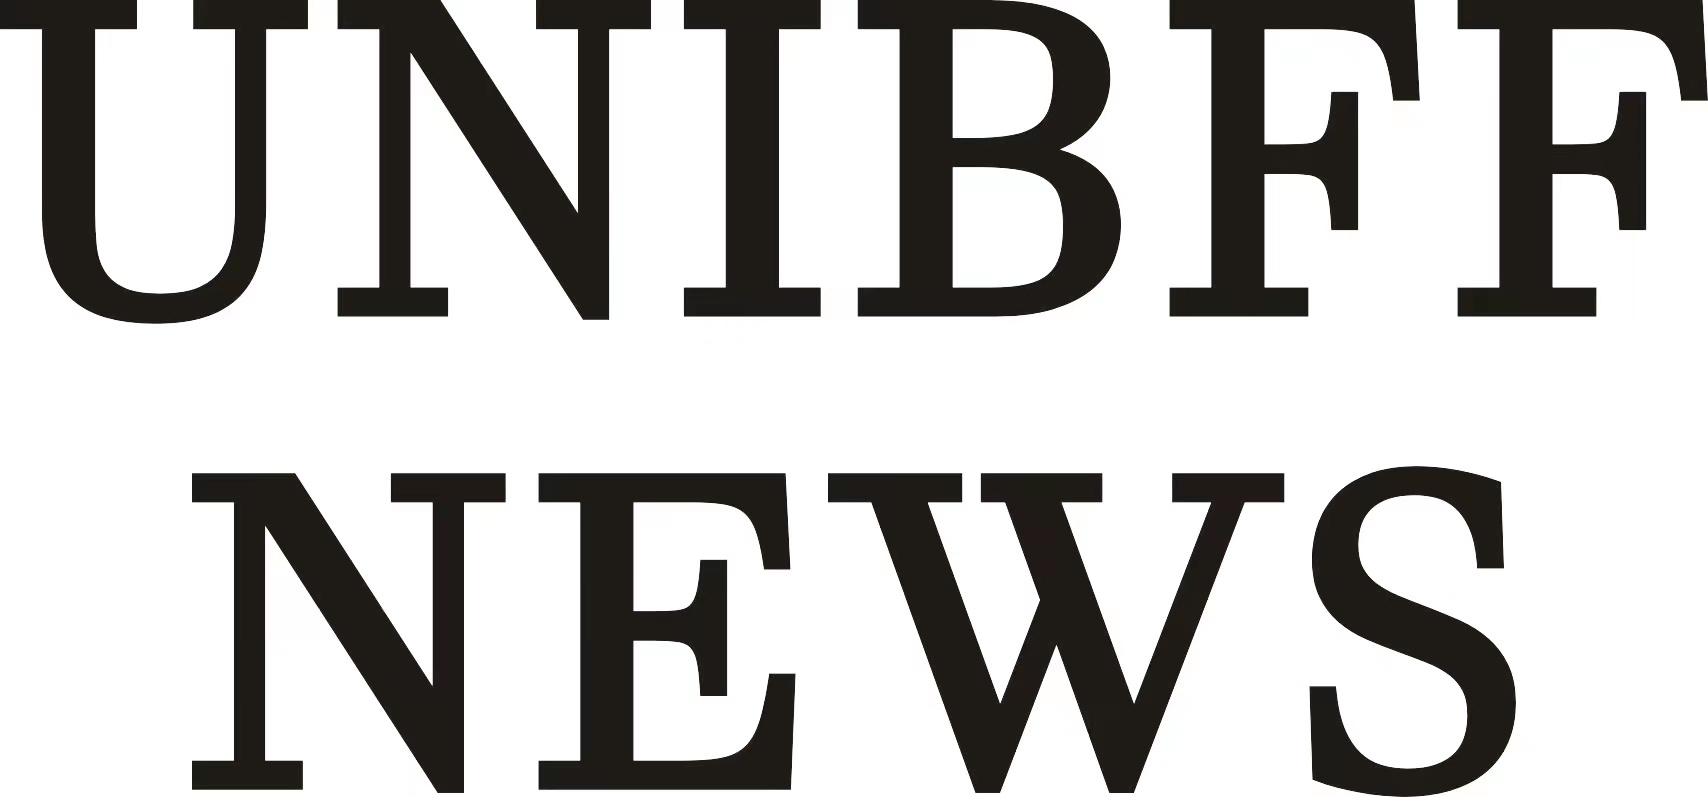 UNIBFF News官网